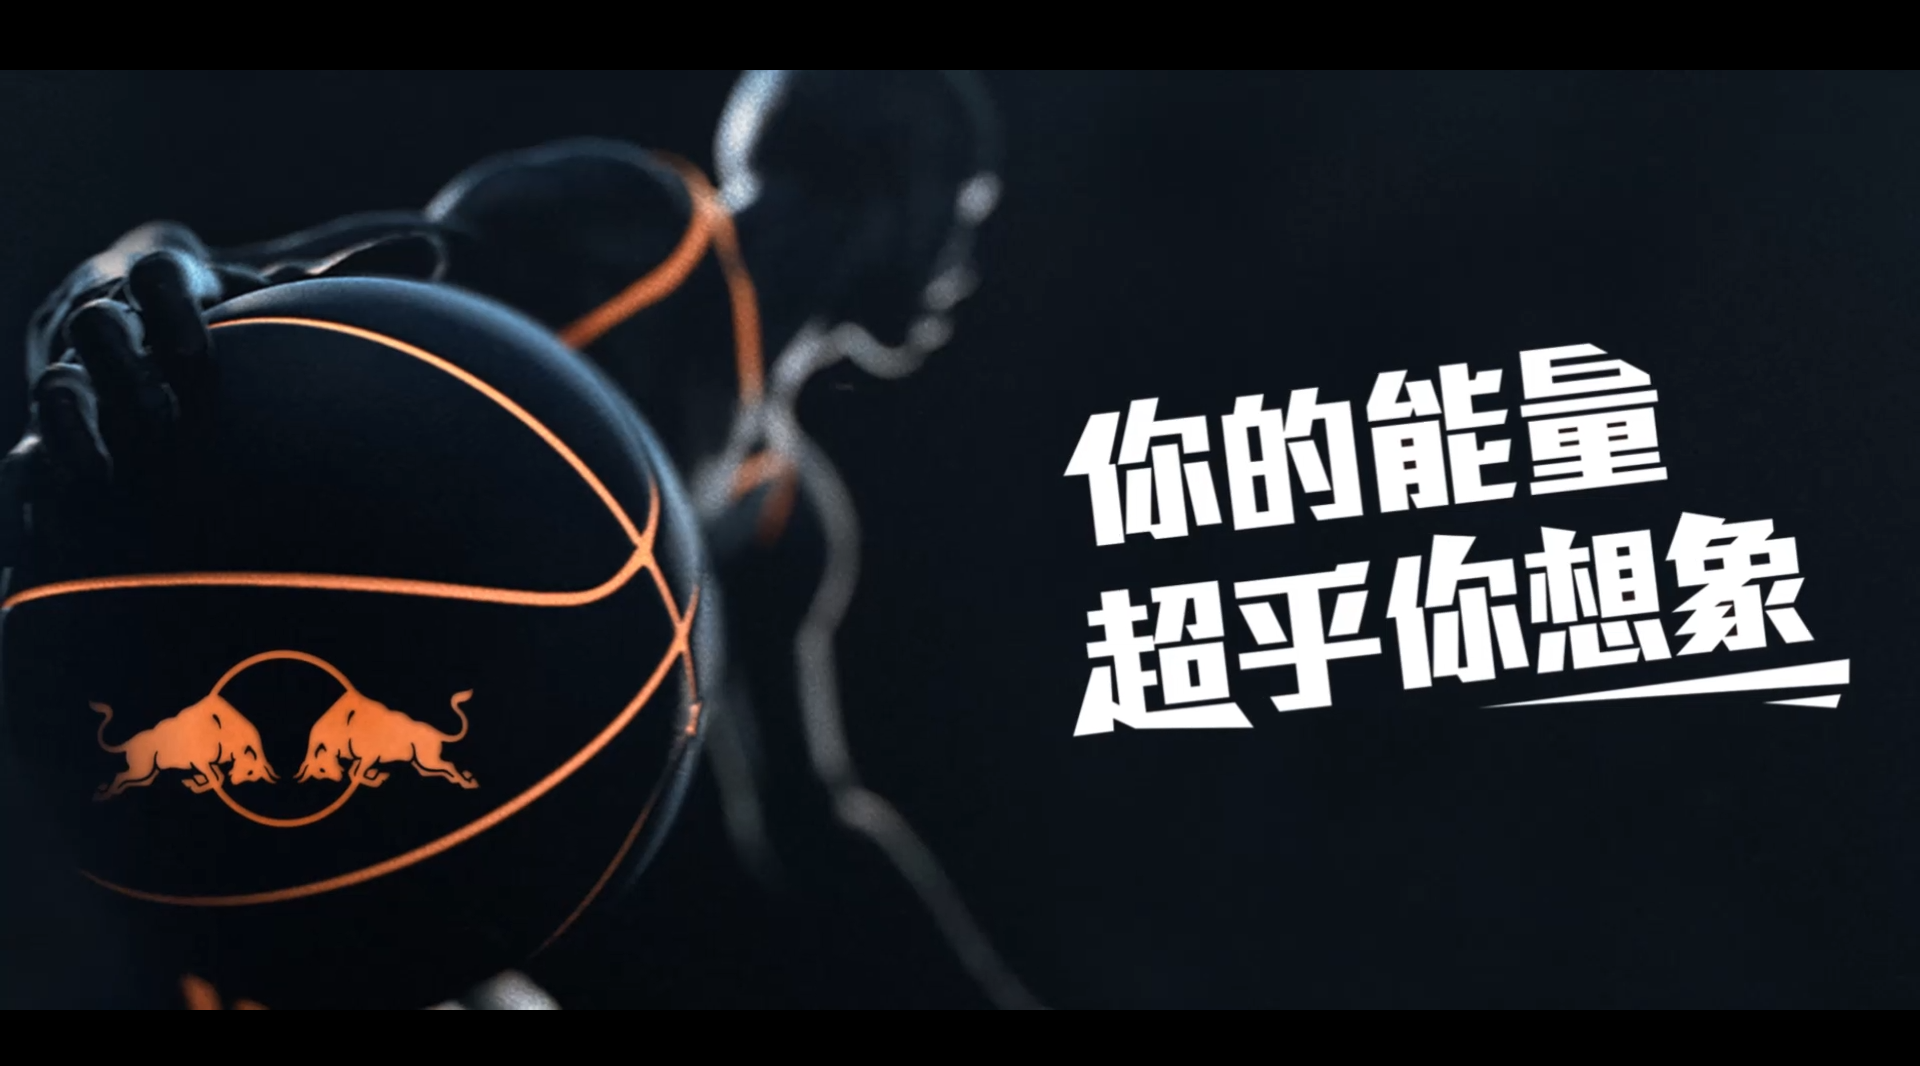 微记录-”红牛杯“2017年东莞市篮球联赛 